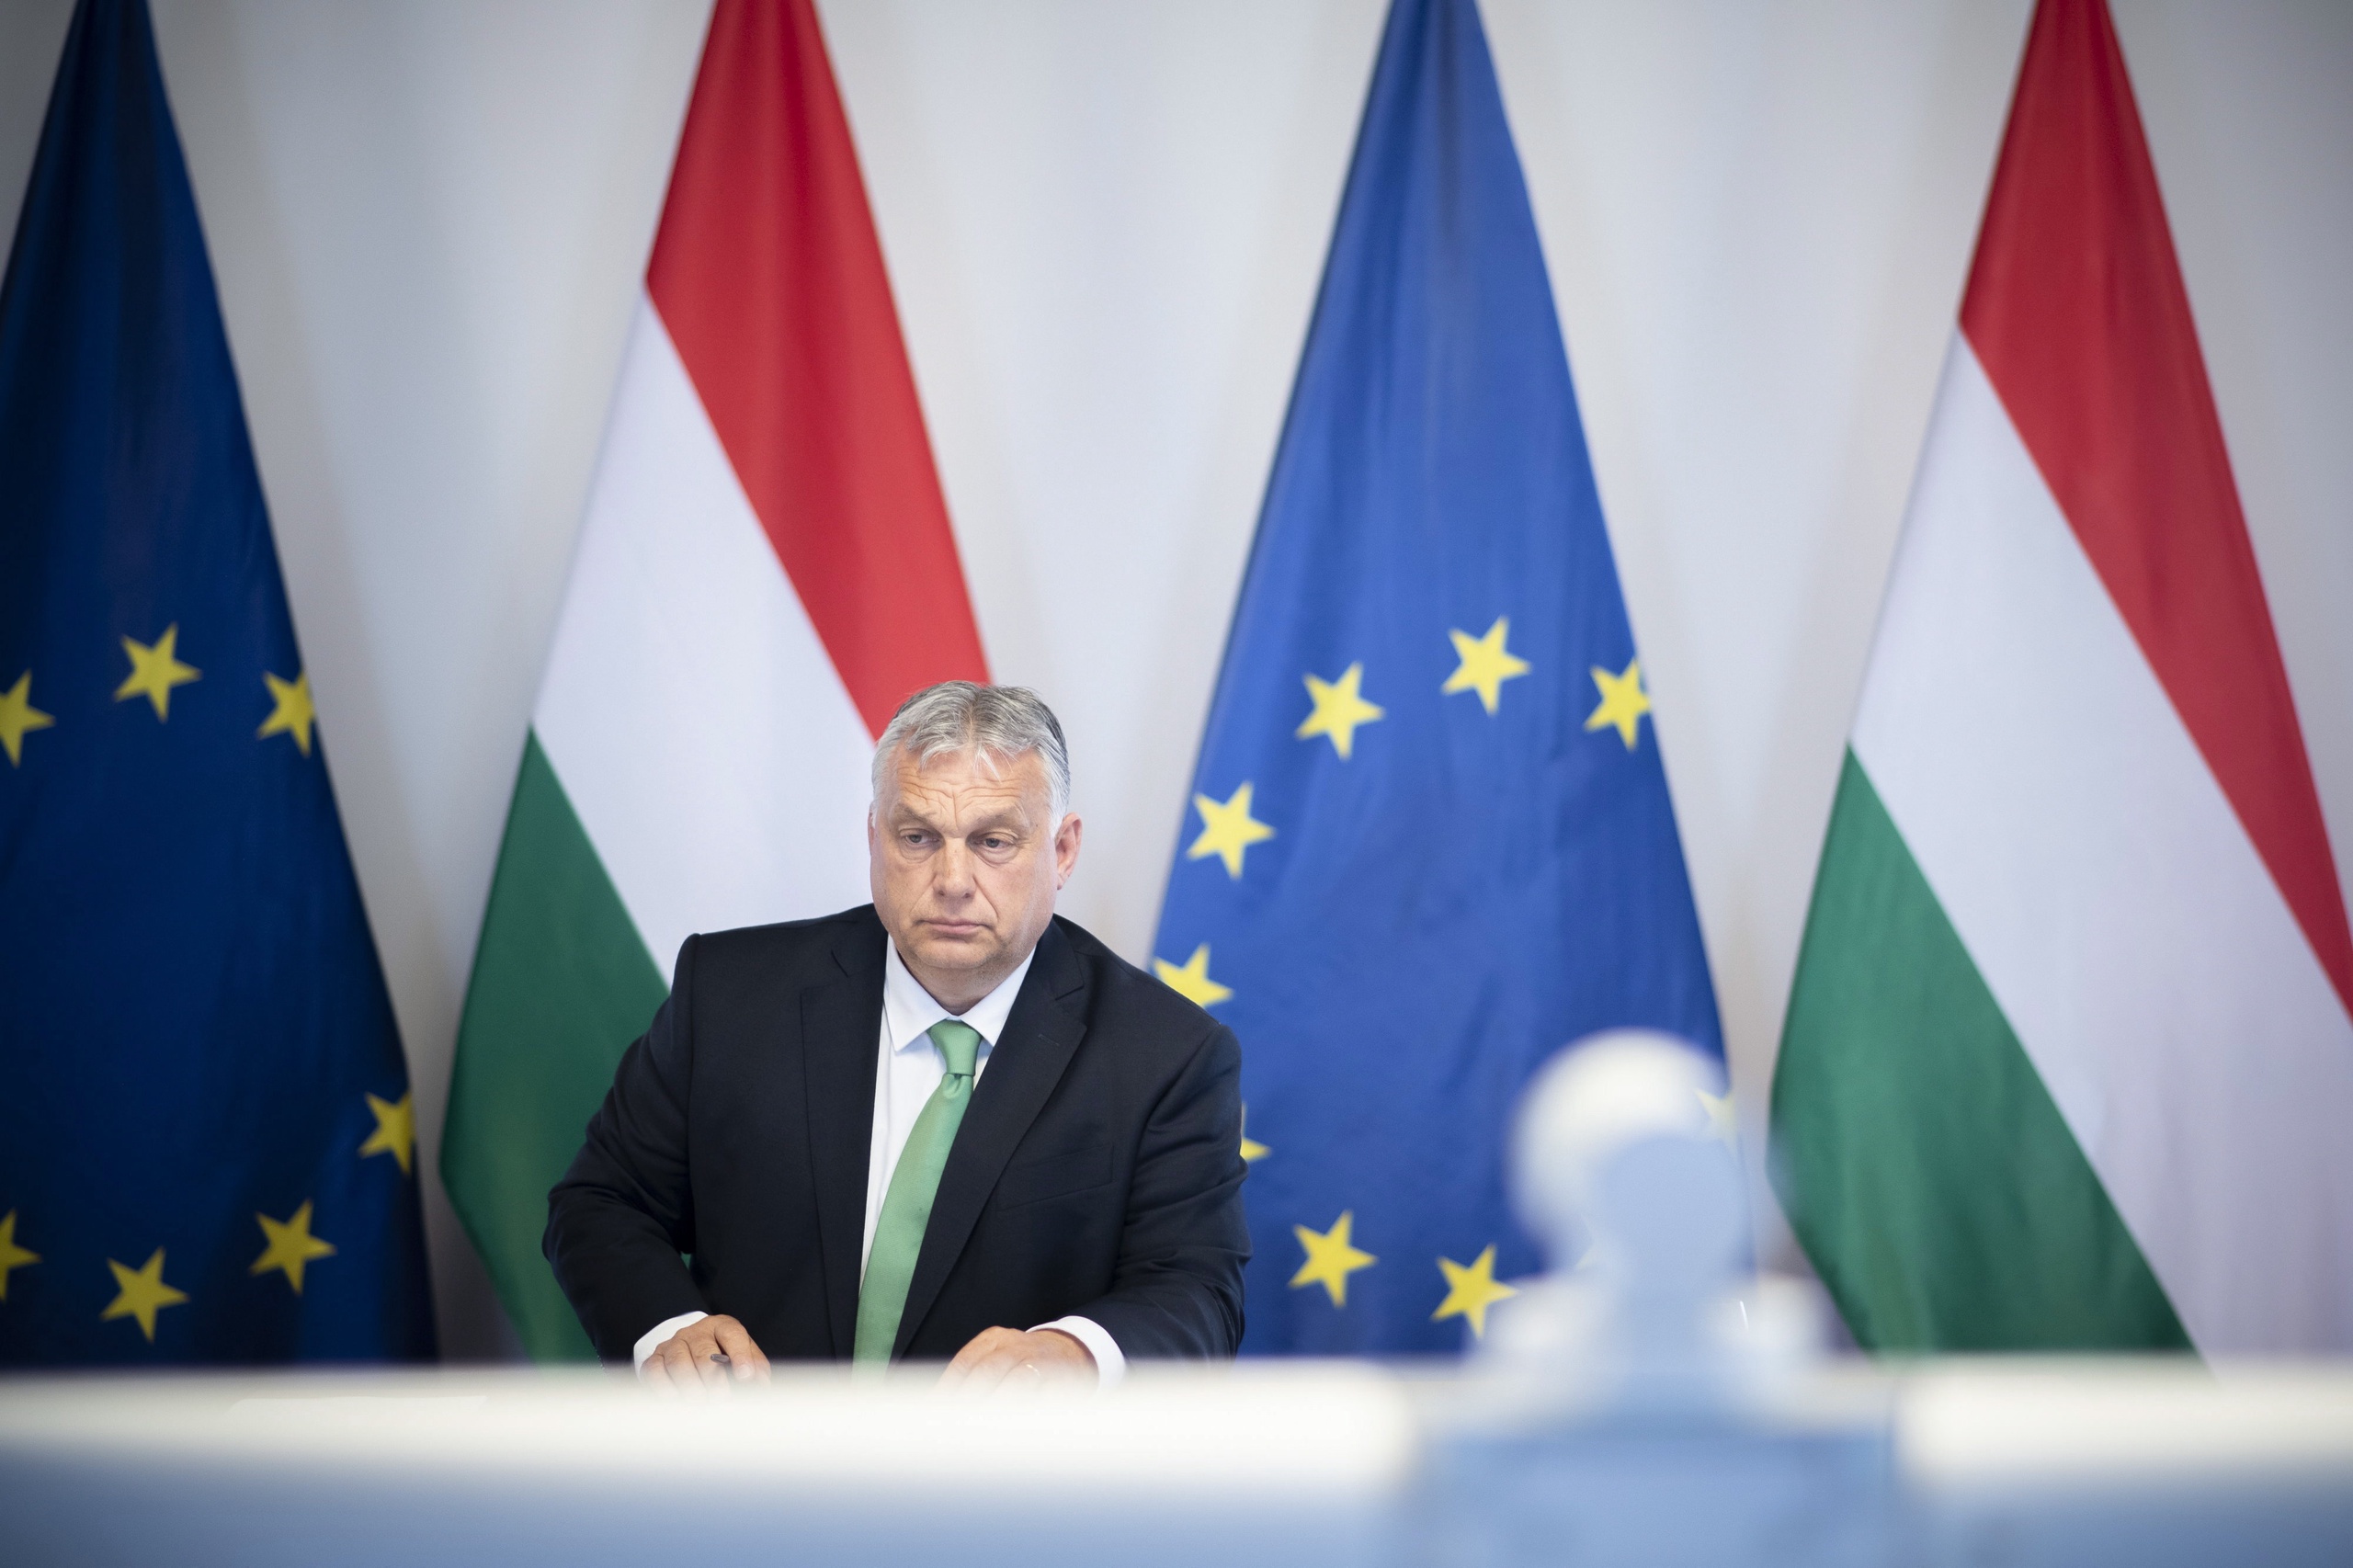 De Hongaarse leider raakt steeds verder geïsoleerd binnen de EU, dankzij zijn pro-Russische houding.